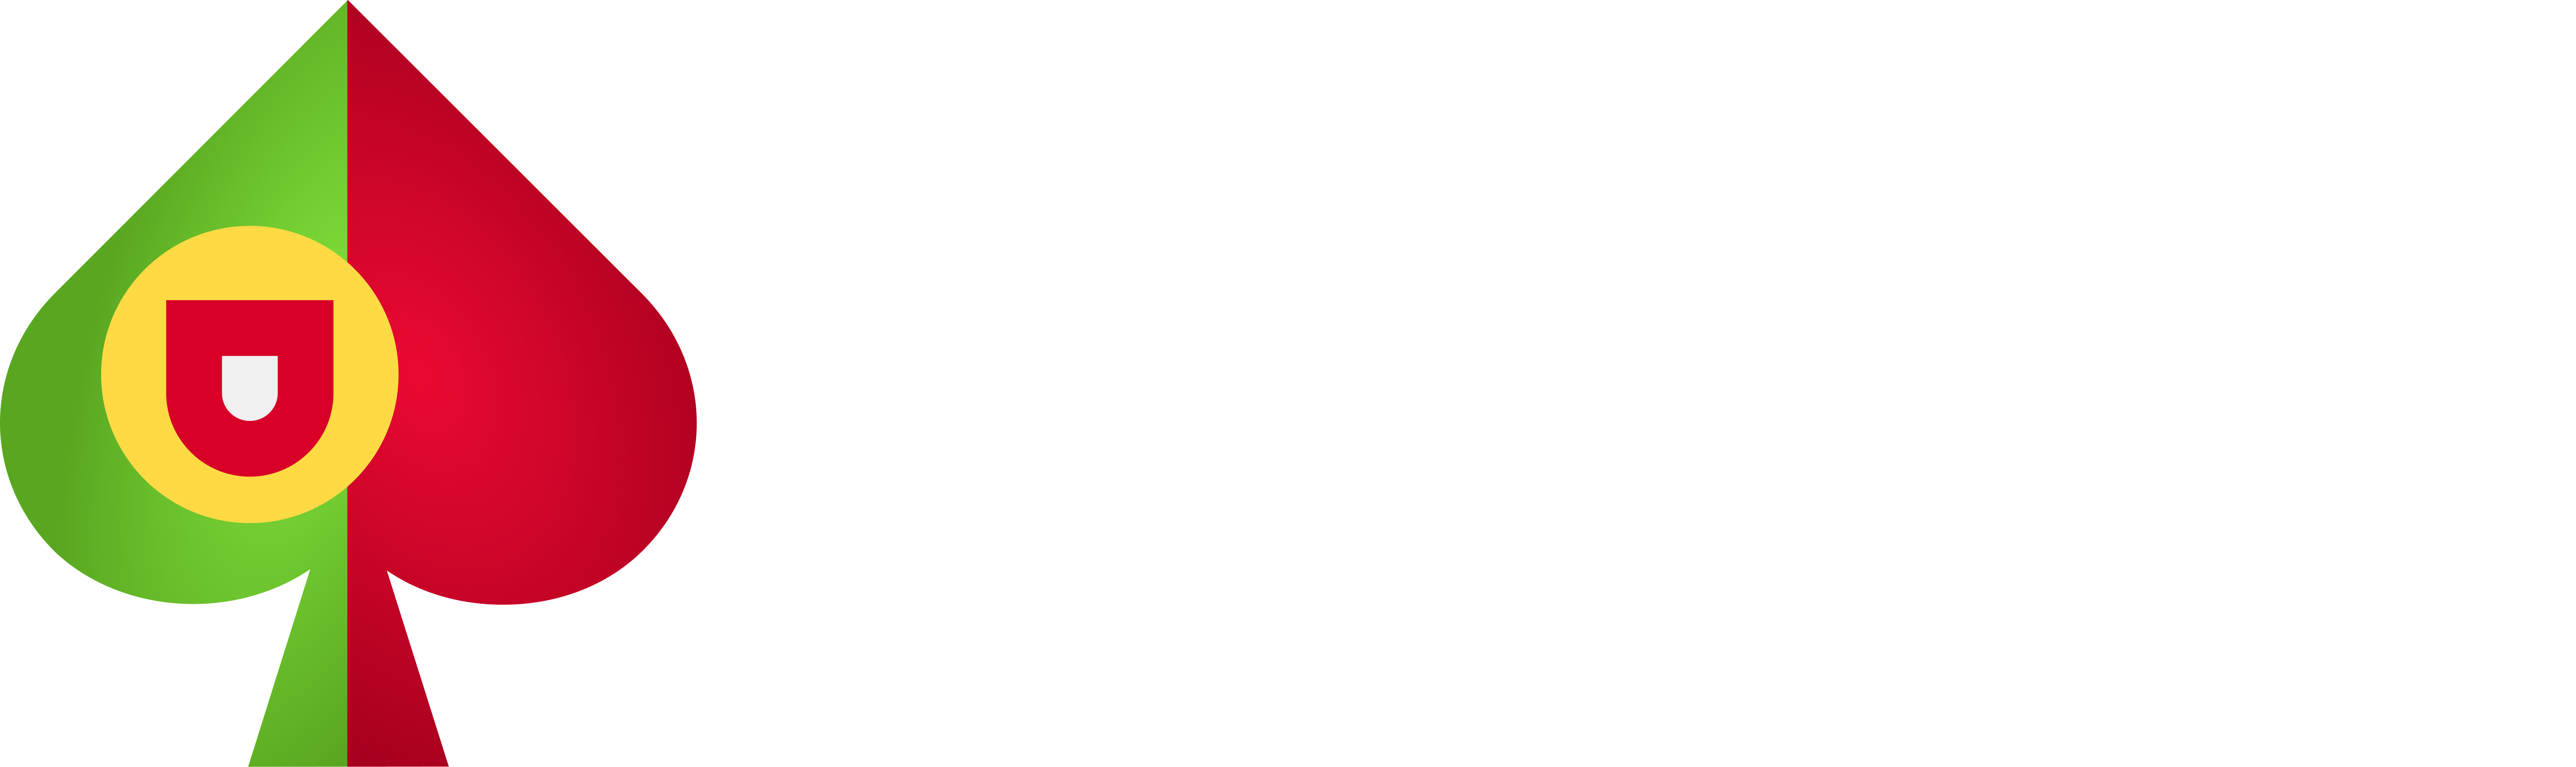 Casinosdeportugal.com.pt